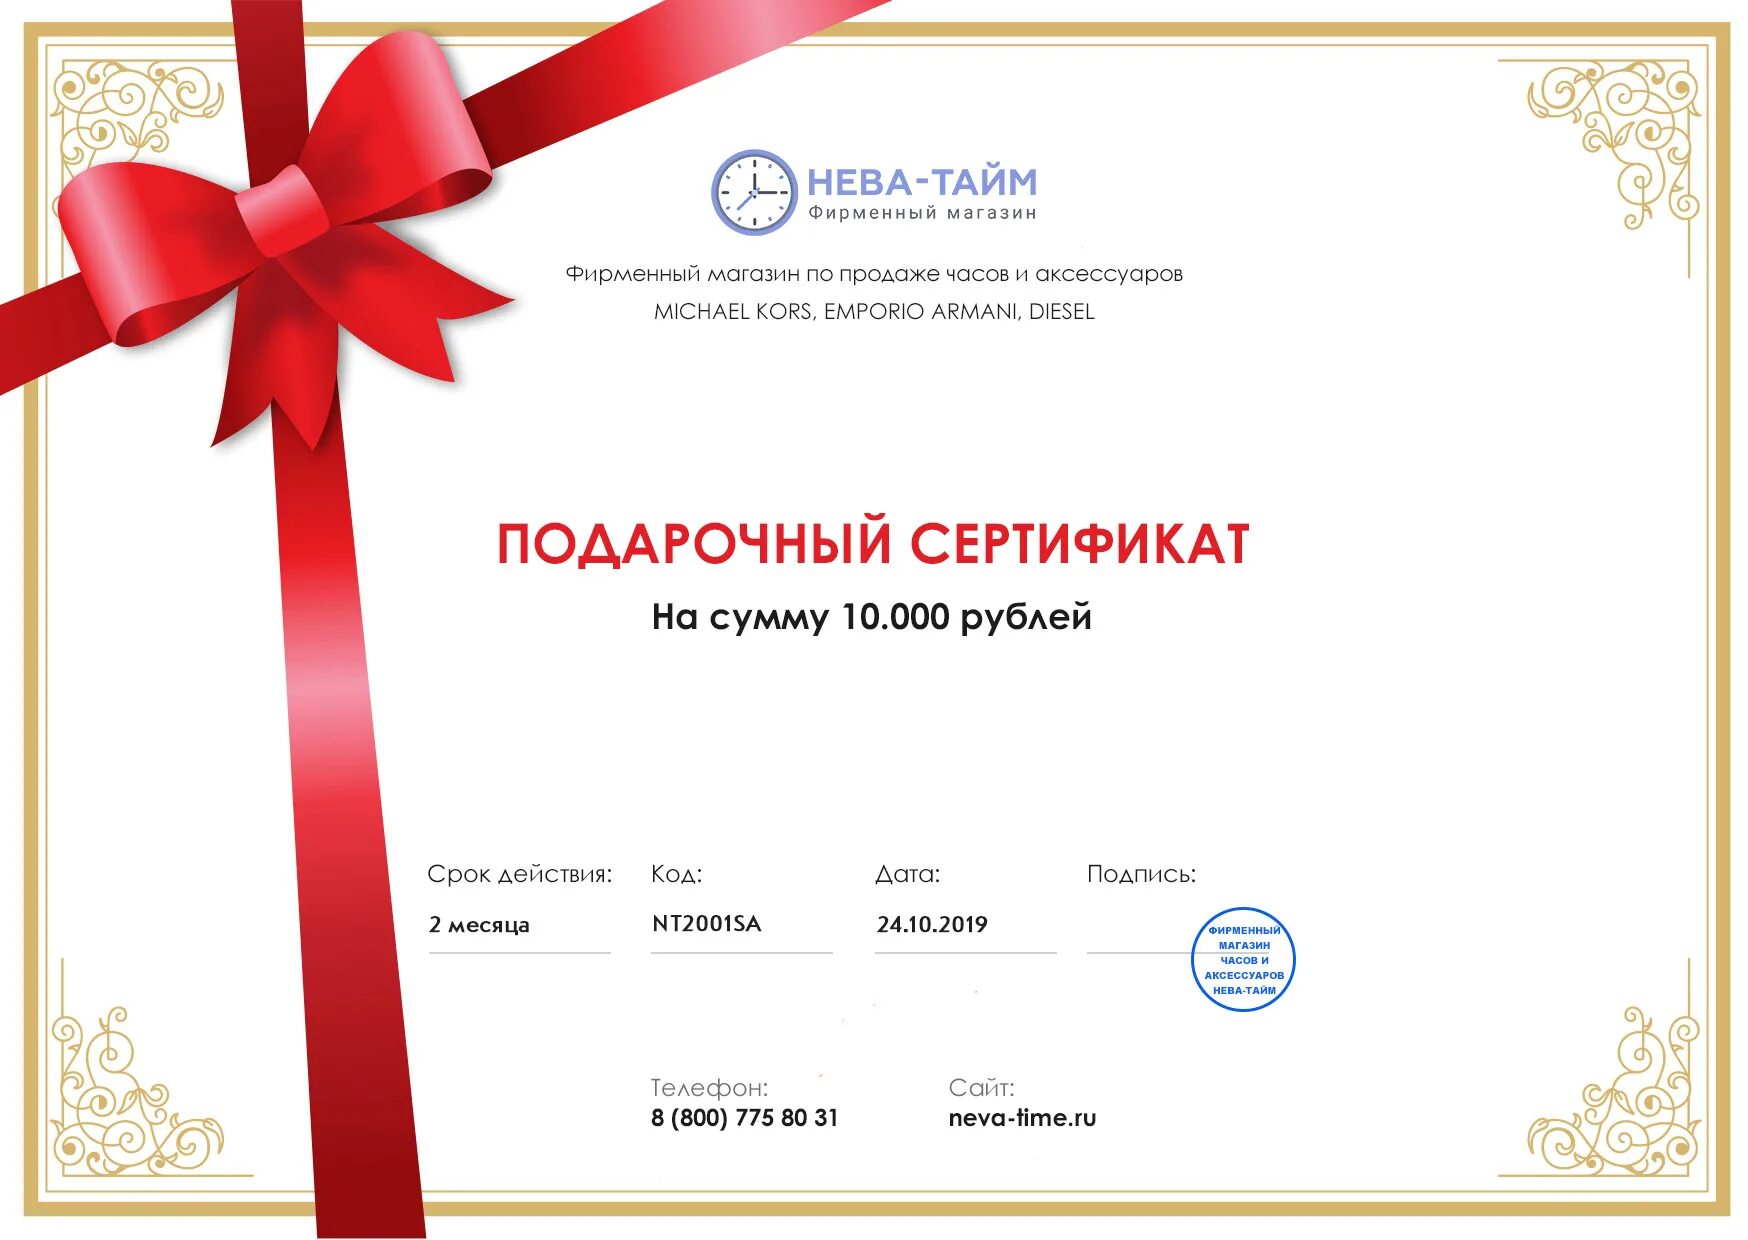 Сертификат на развлечения. Сертификат подарочный для женщины. Padarochniy sertifikat. Подарочный сертификат на день рождения. Подарочный СЕРТТИФИКА.